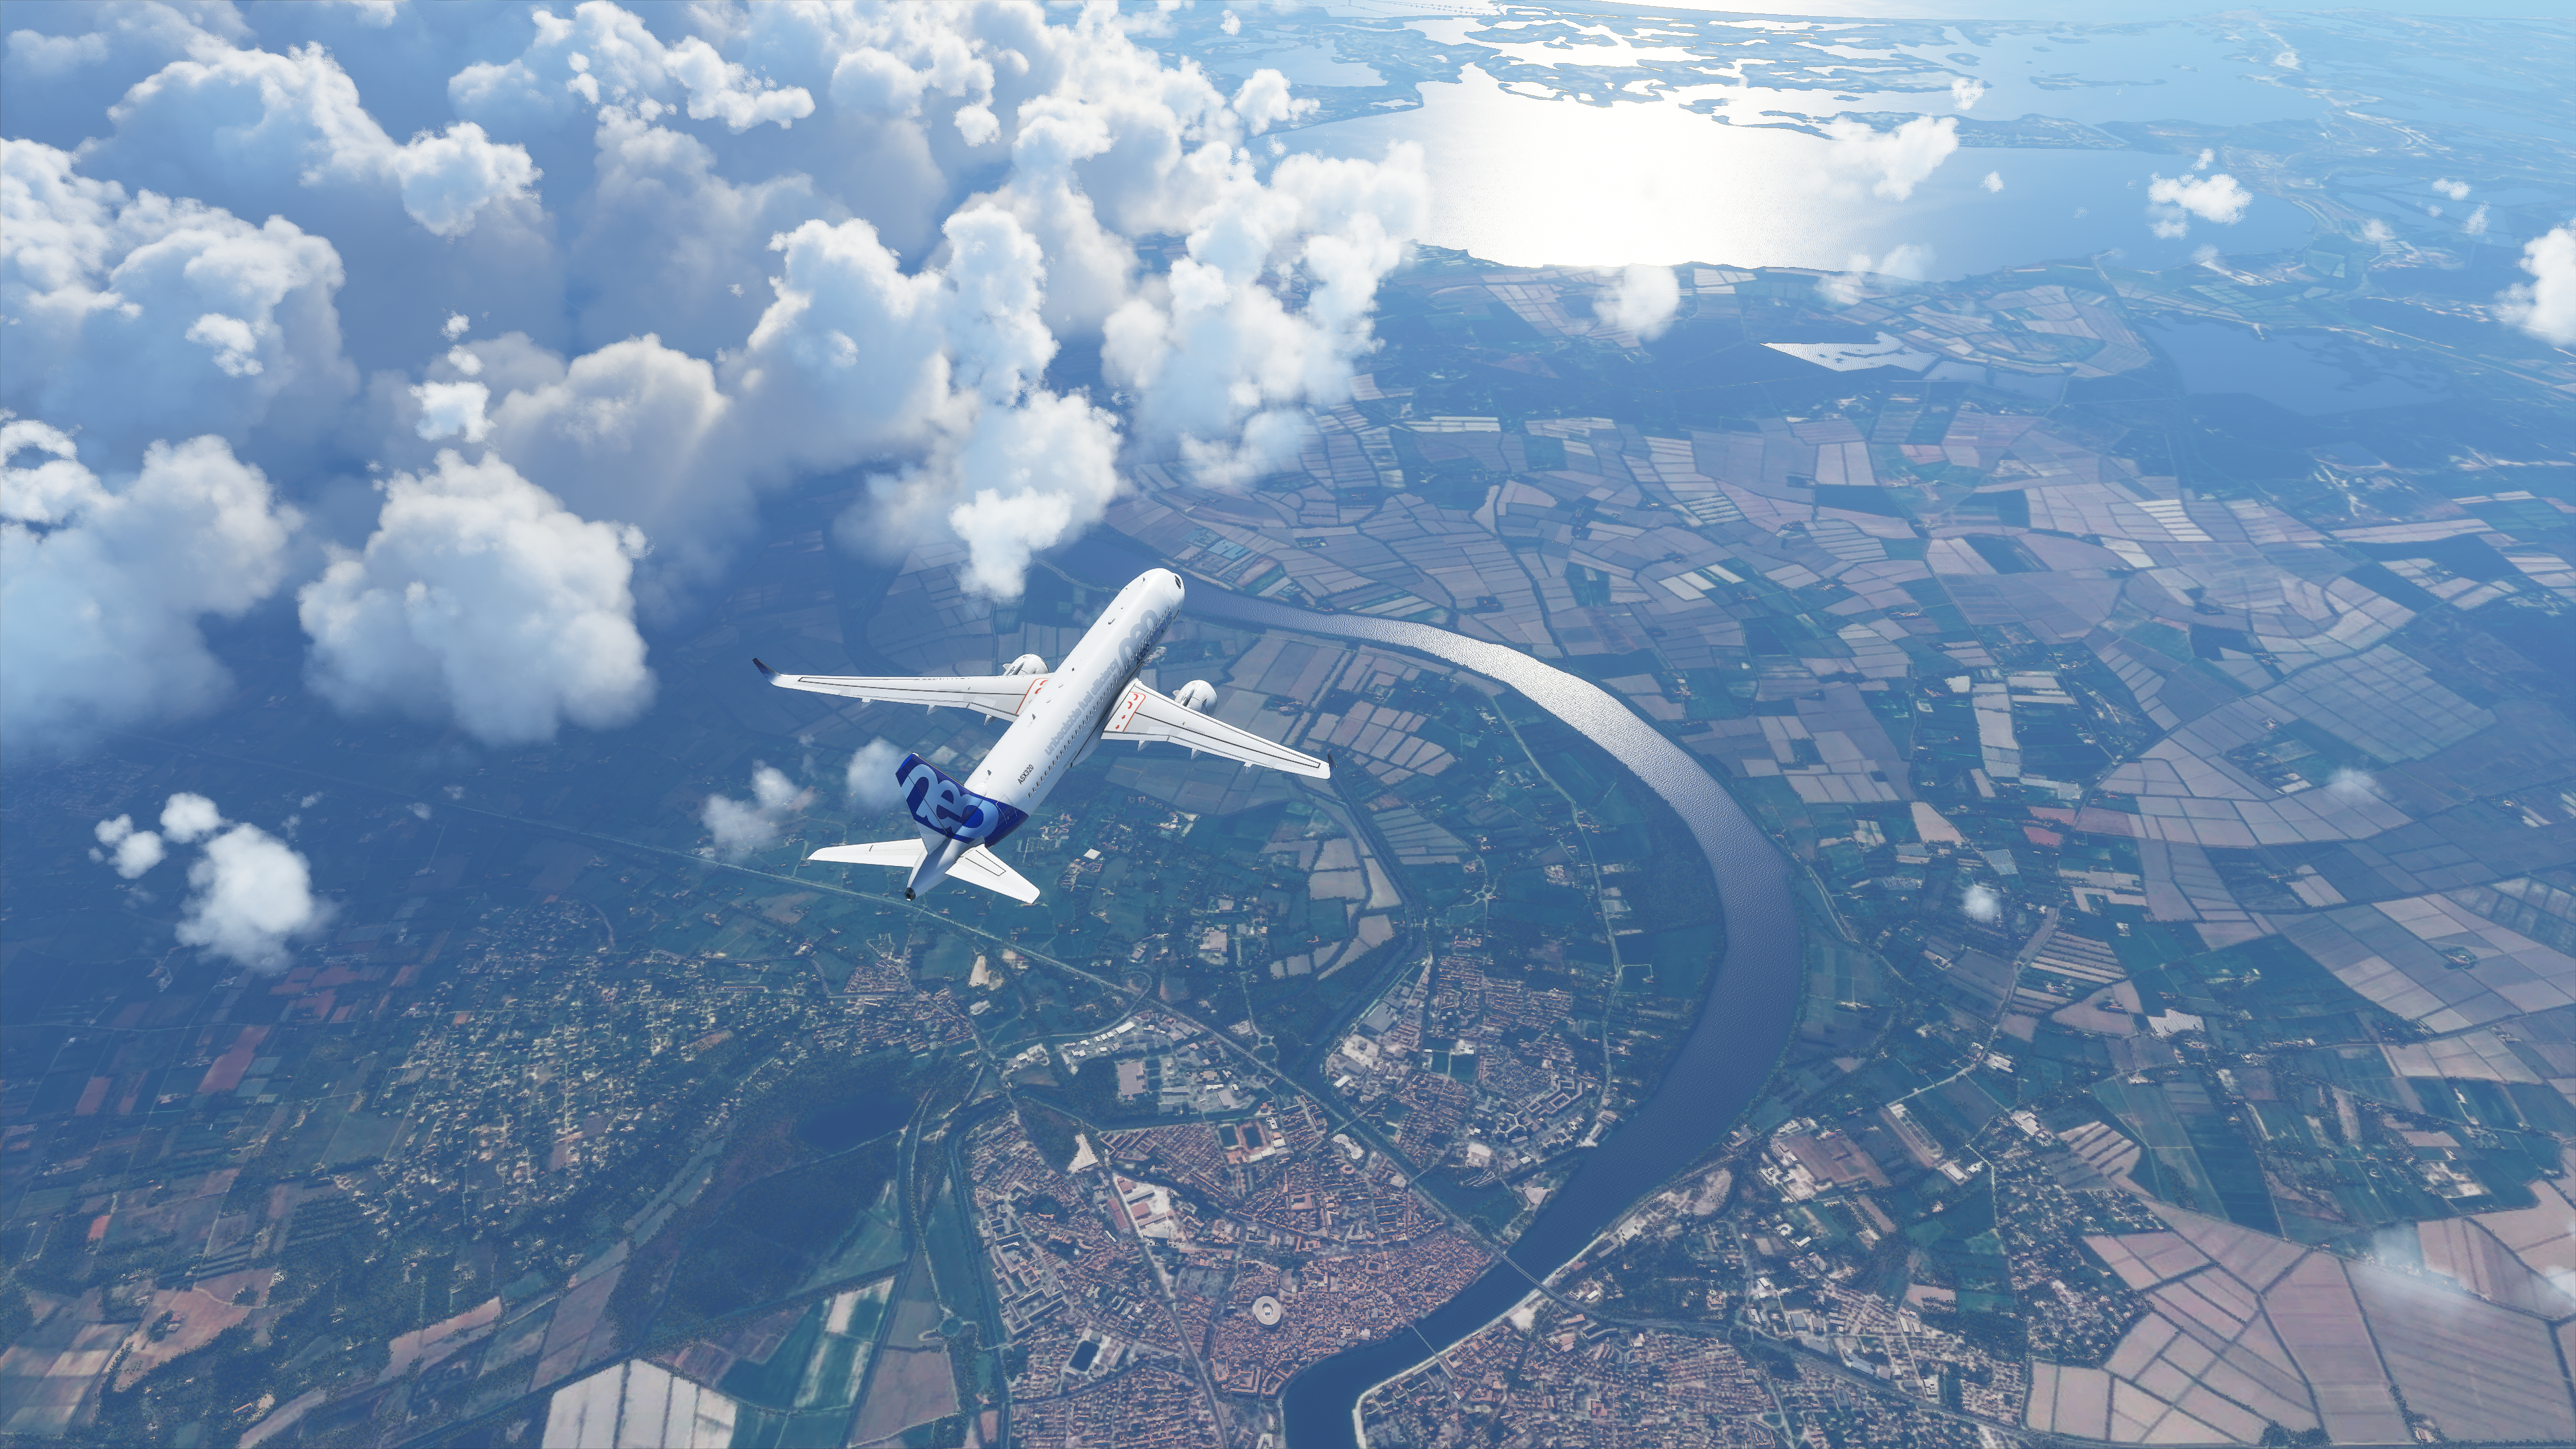 Microsoft Flight Simulator enfim é mostrado num Xbox Series S